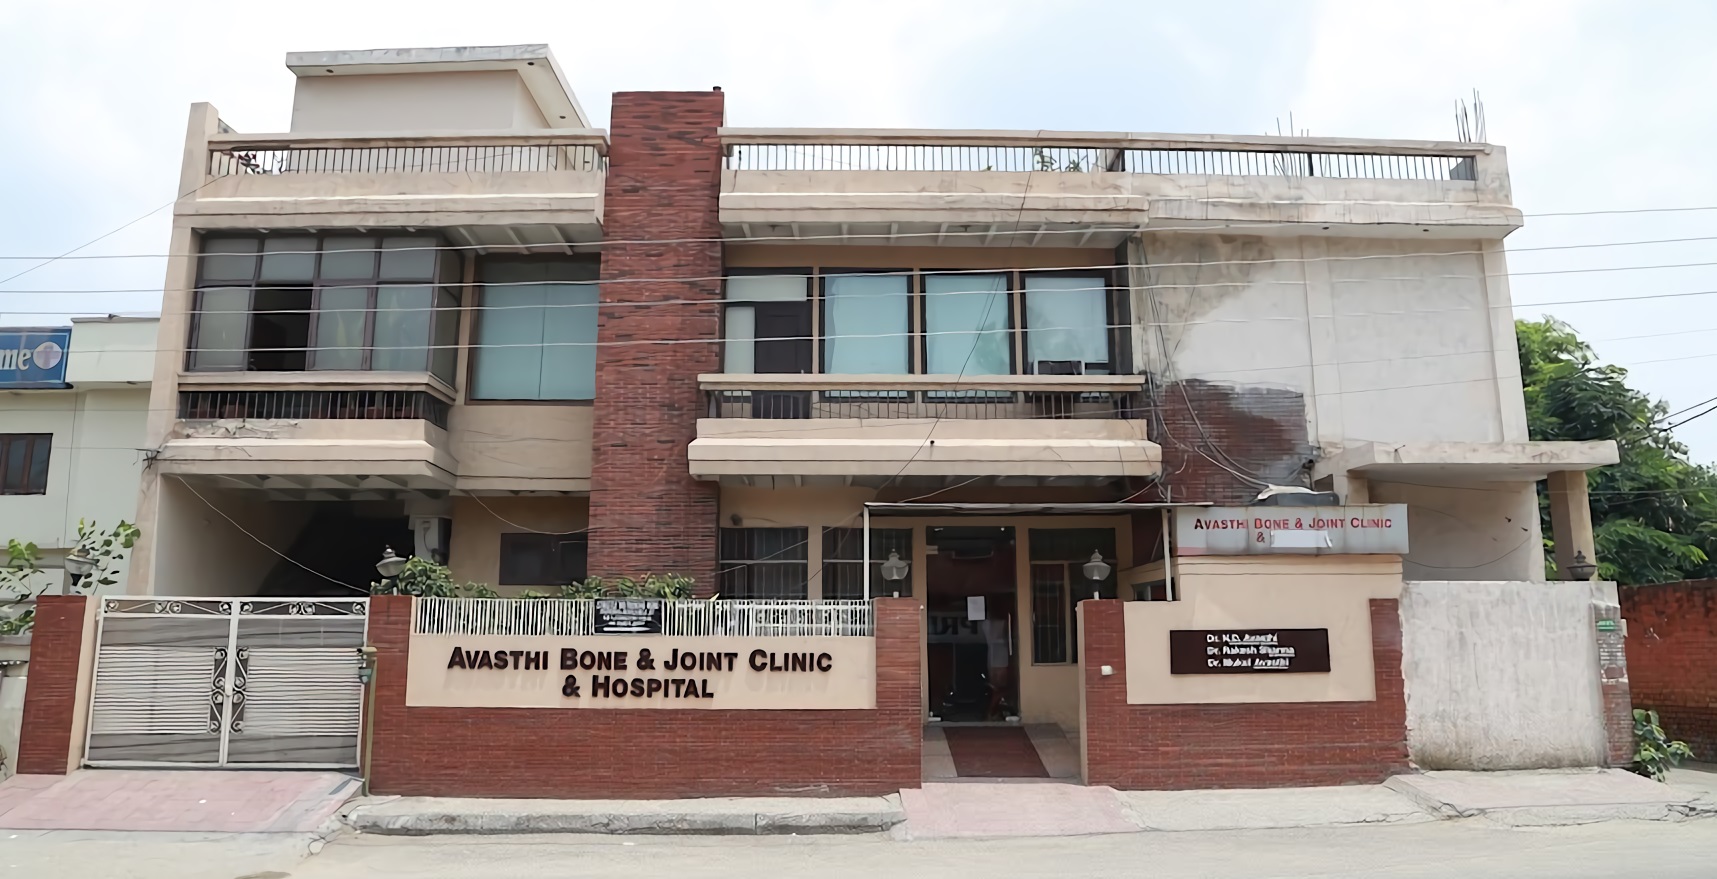 Avasthi Bone & Joint Clinic & Hospital